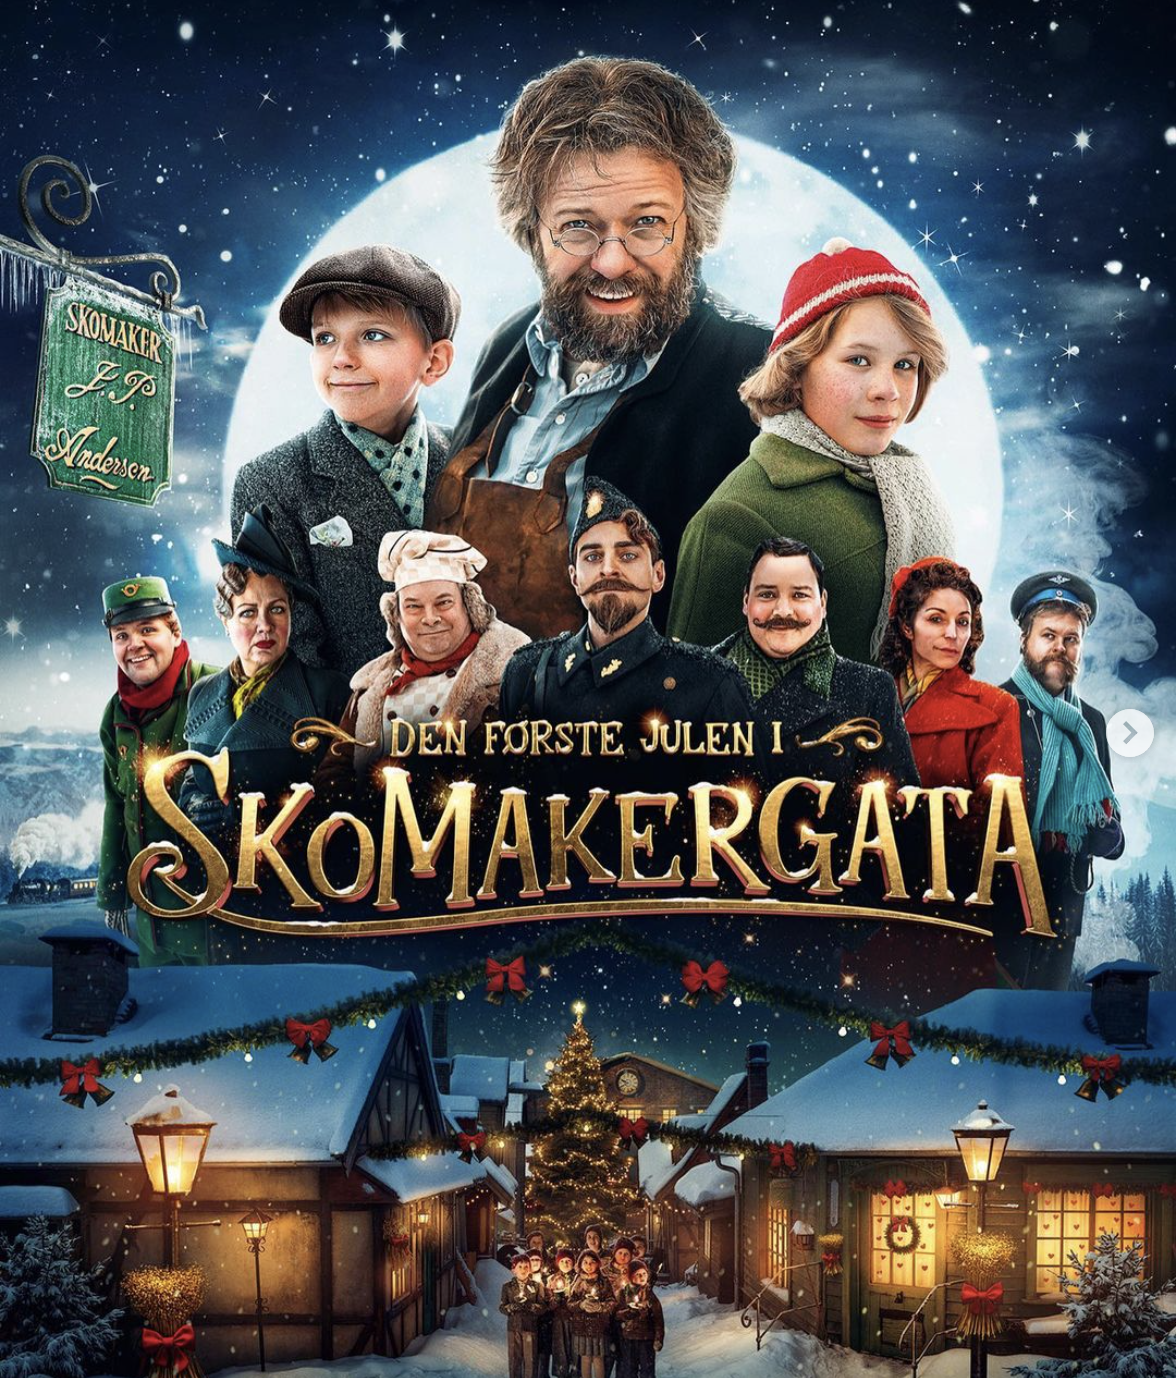 Gratis utekino – premiere på «Den første julen i Skomakergata»